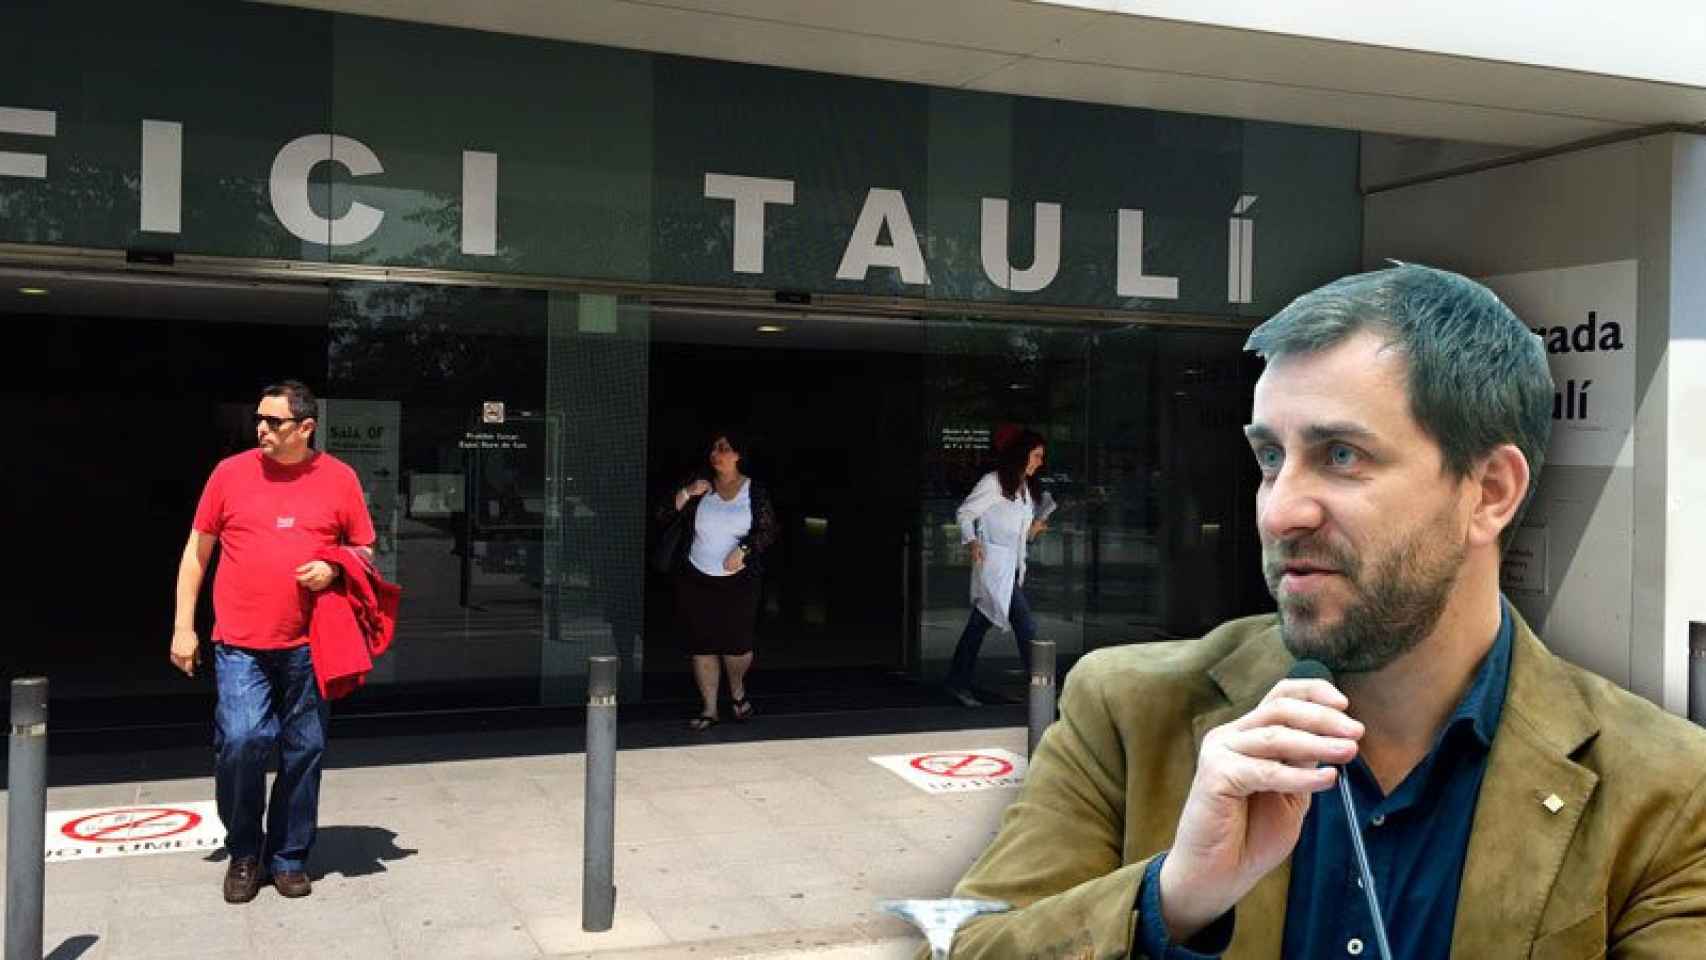 El consejero catalán de Sanidad, Toni Comín, junto a la entrada a la Corporación Sanitaria Taulí de Sabadell.